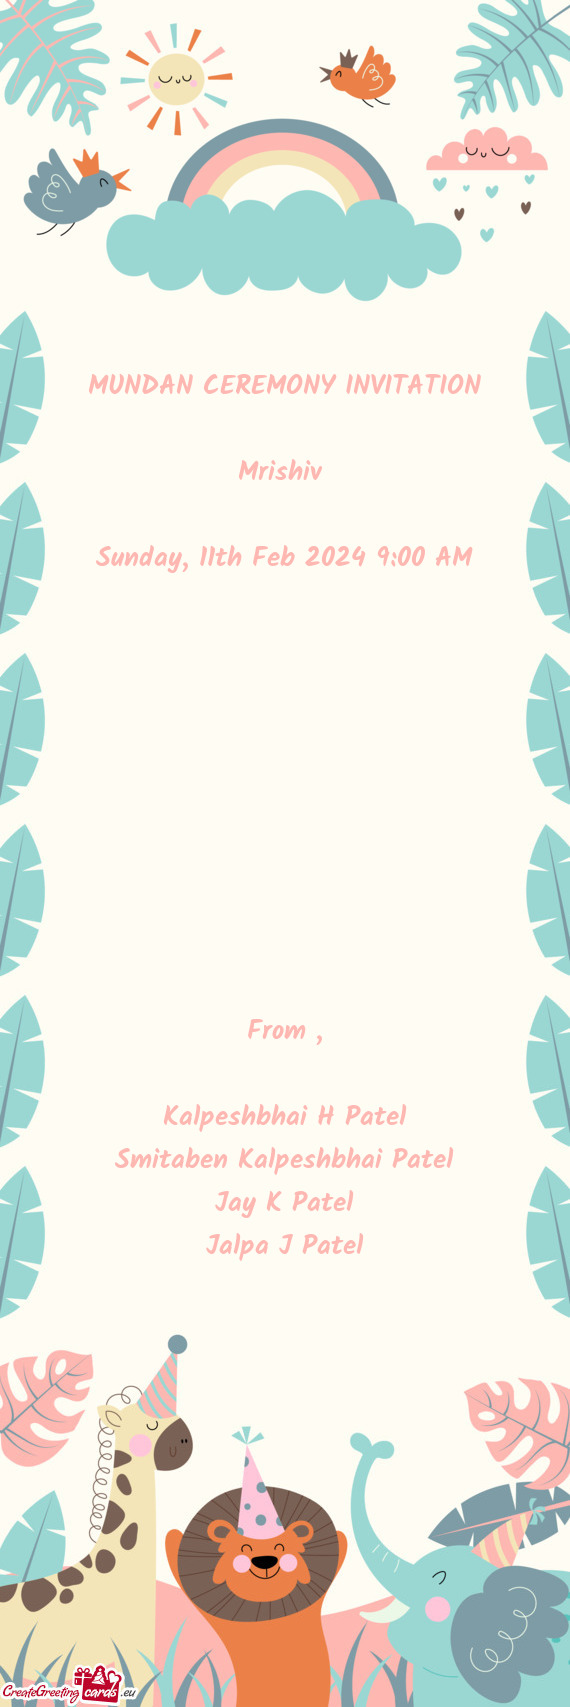 Kalpeshbhai H Patel